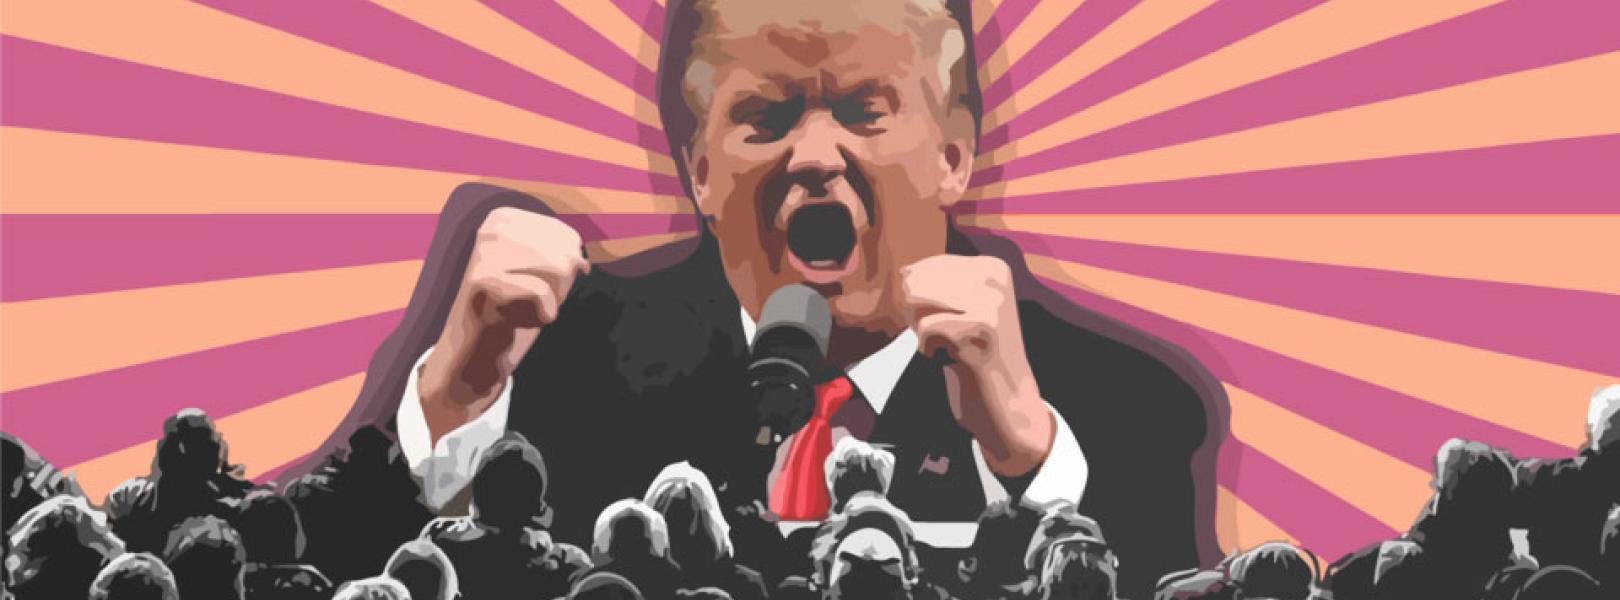 De meedogenloze politieke agenda achter 91 aanklachten tegen Donald Trump